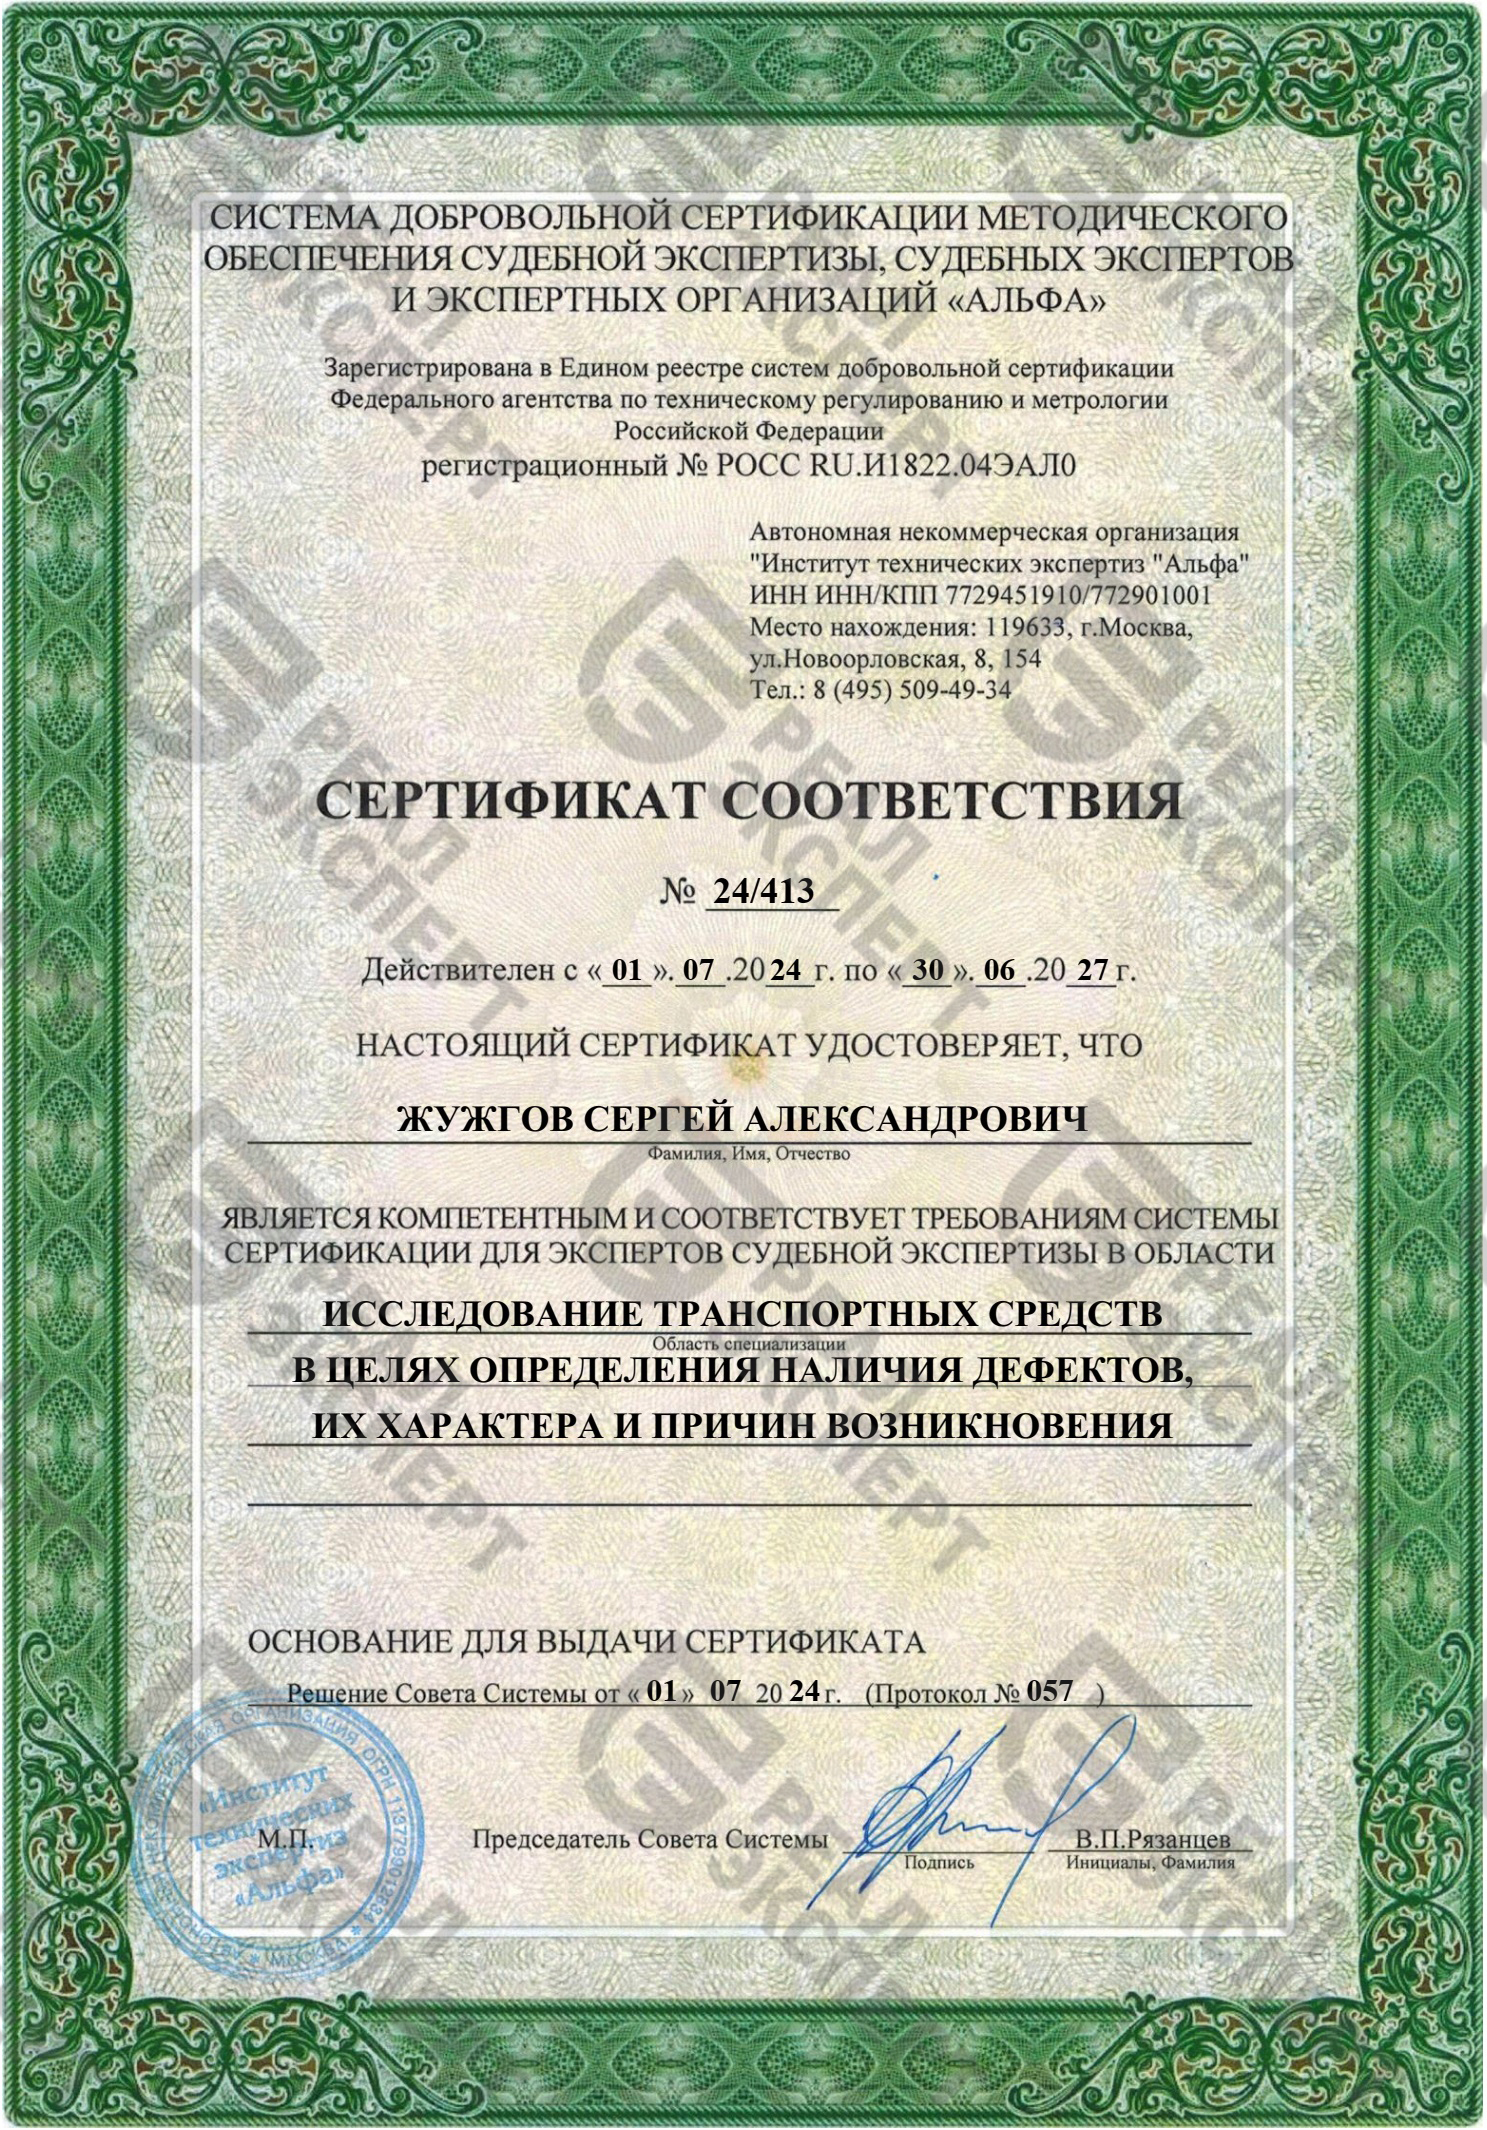 Сертификат для экспертов судебной экспертизы (определение наличия дефектов)